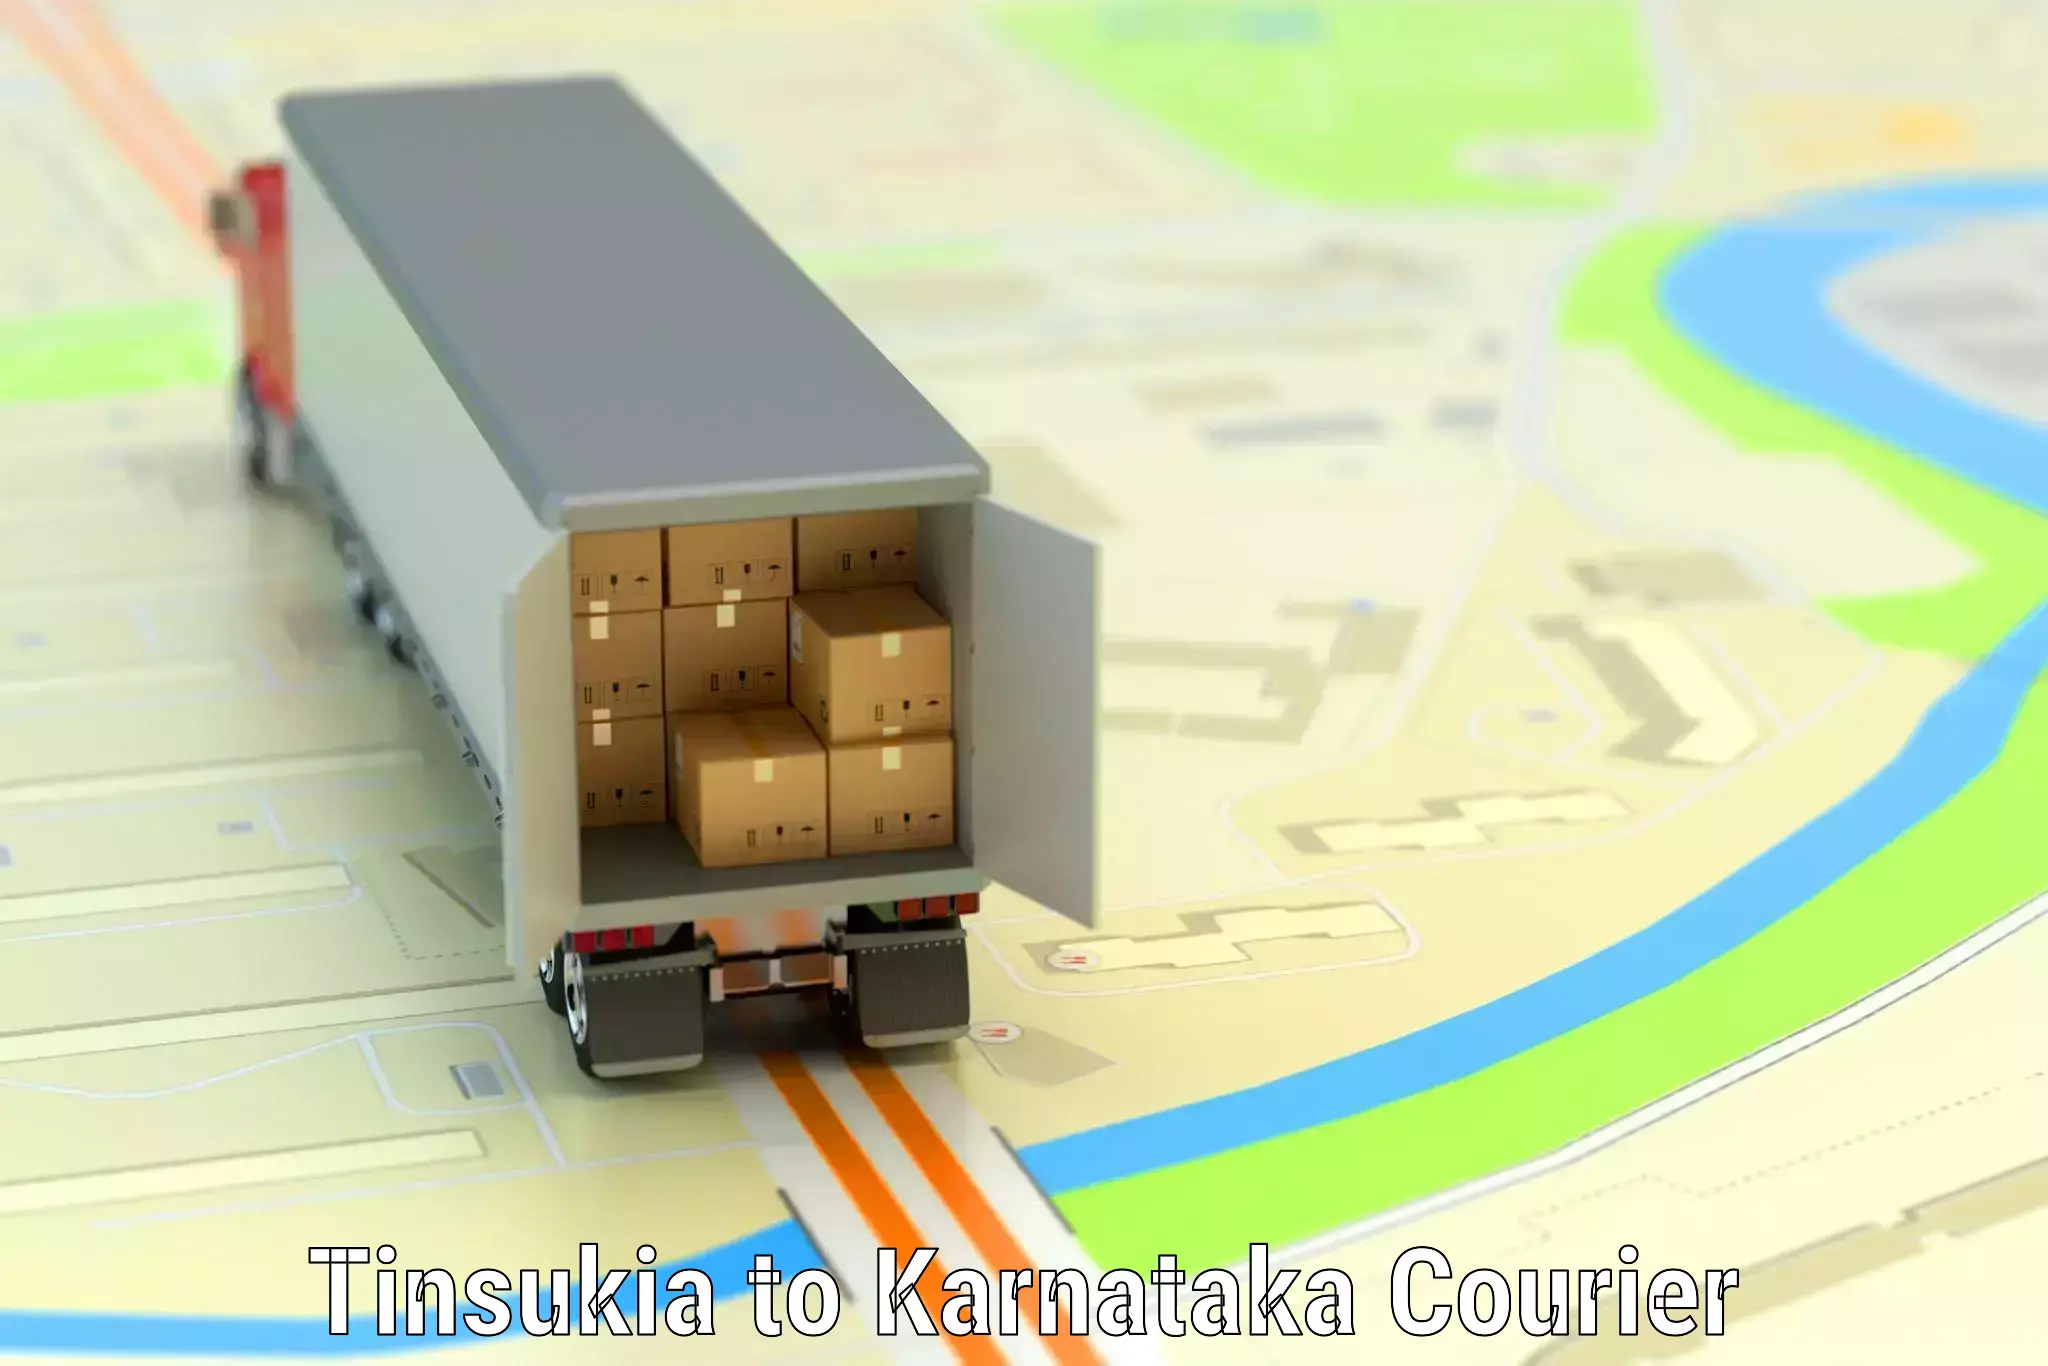 Luggage delivery solutions Tinsukia to Gokak